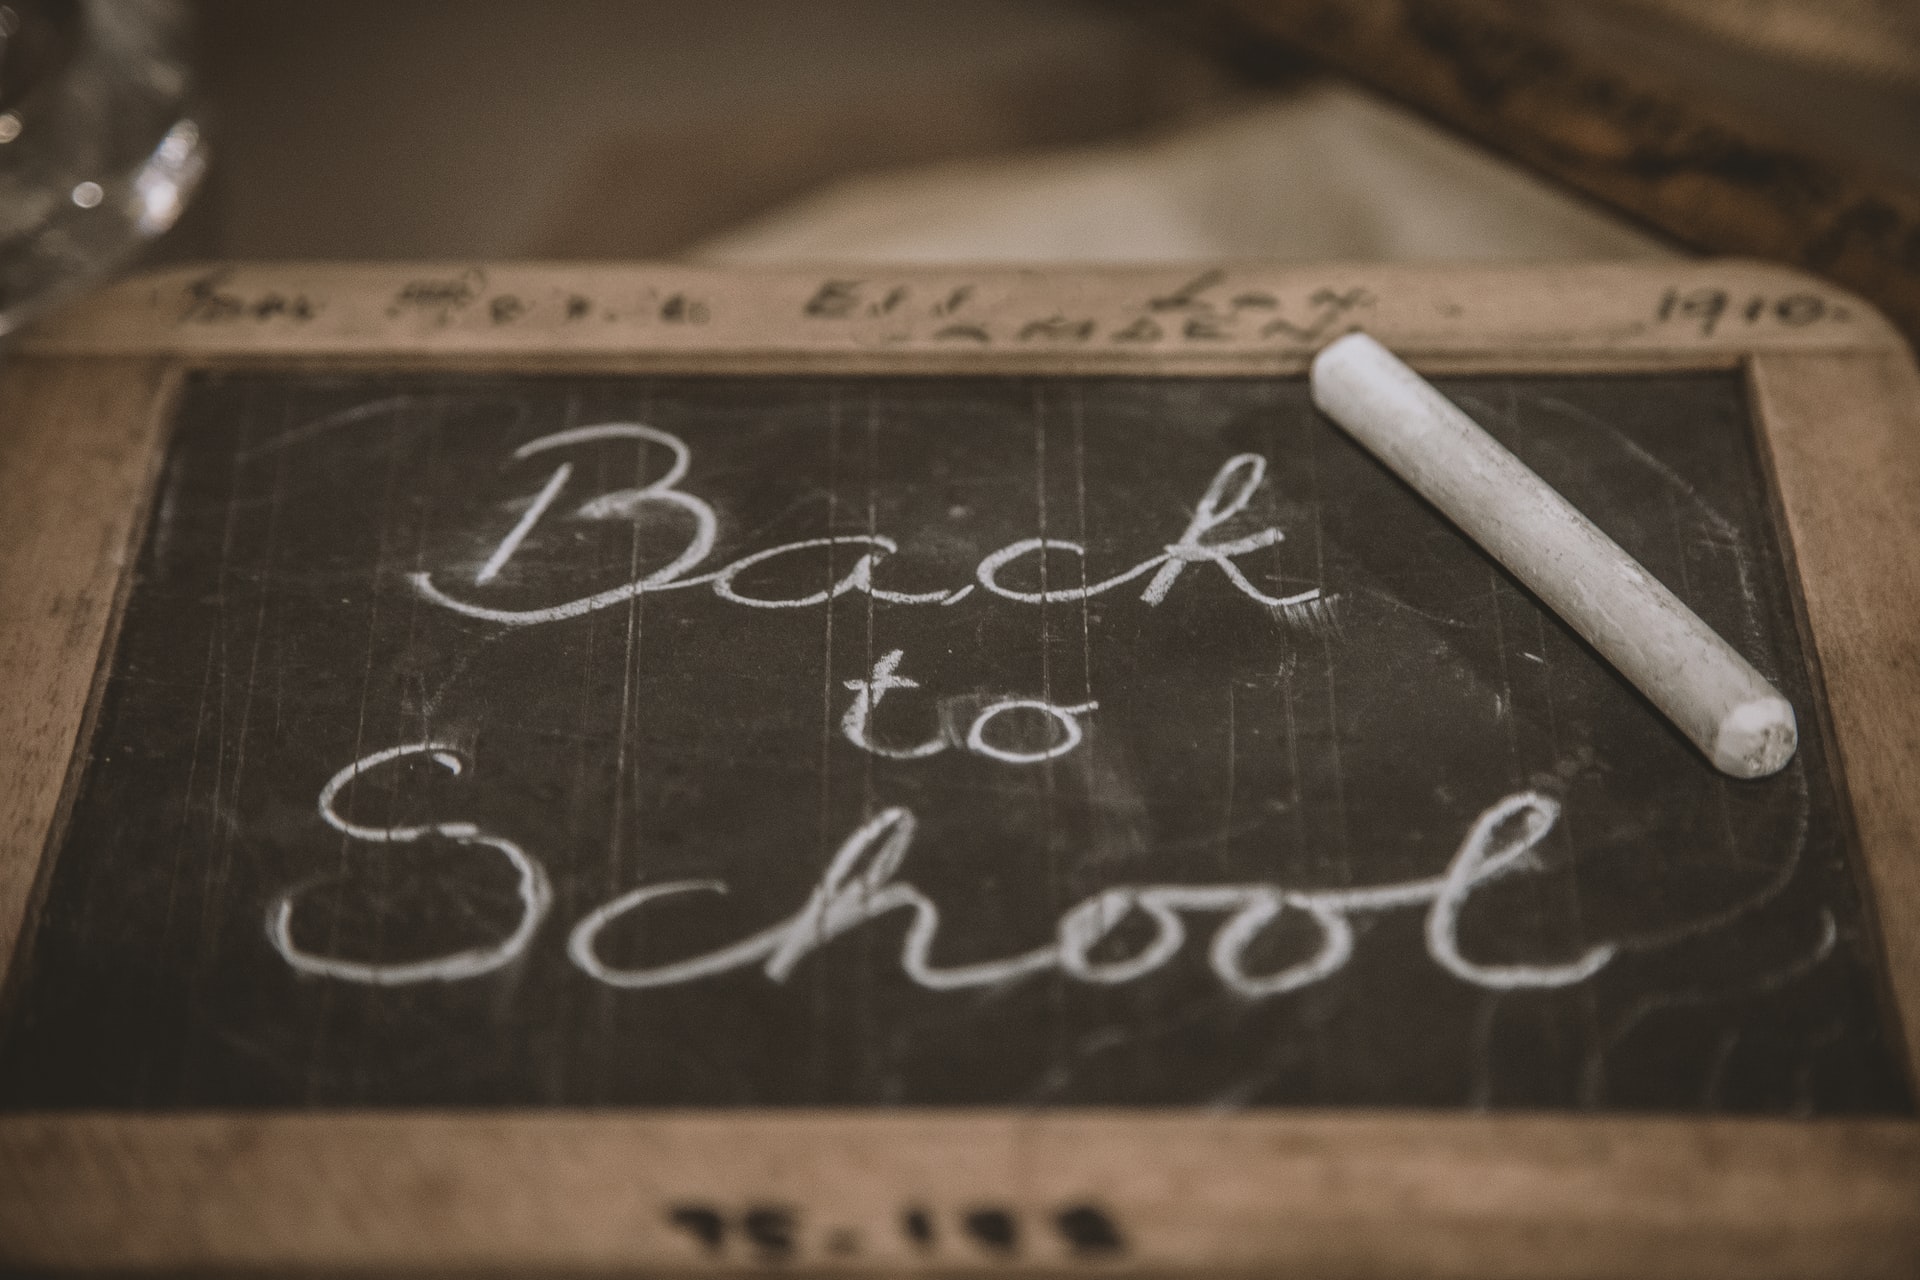 Back to school written on a chalkboard